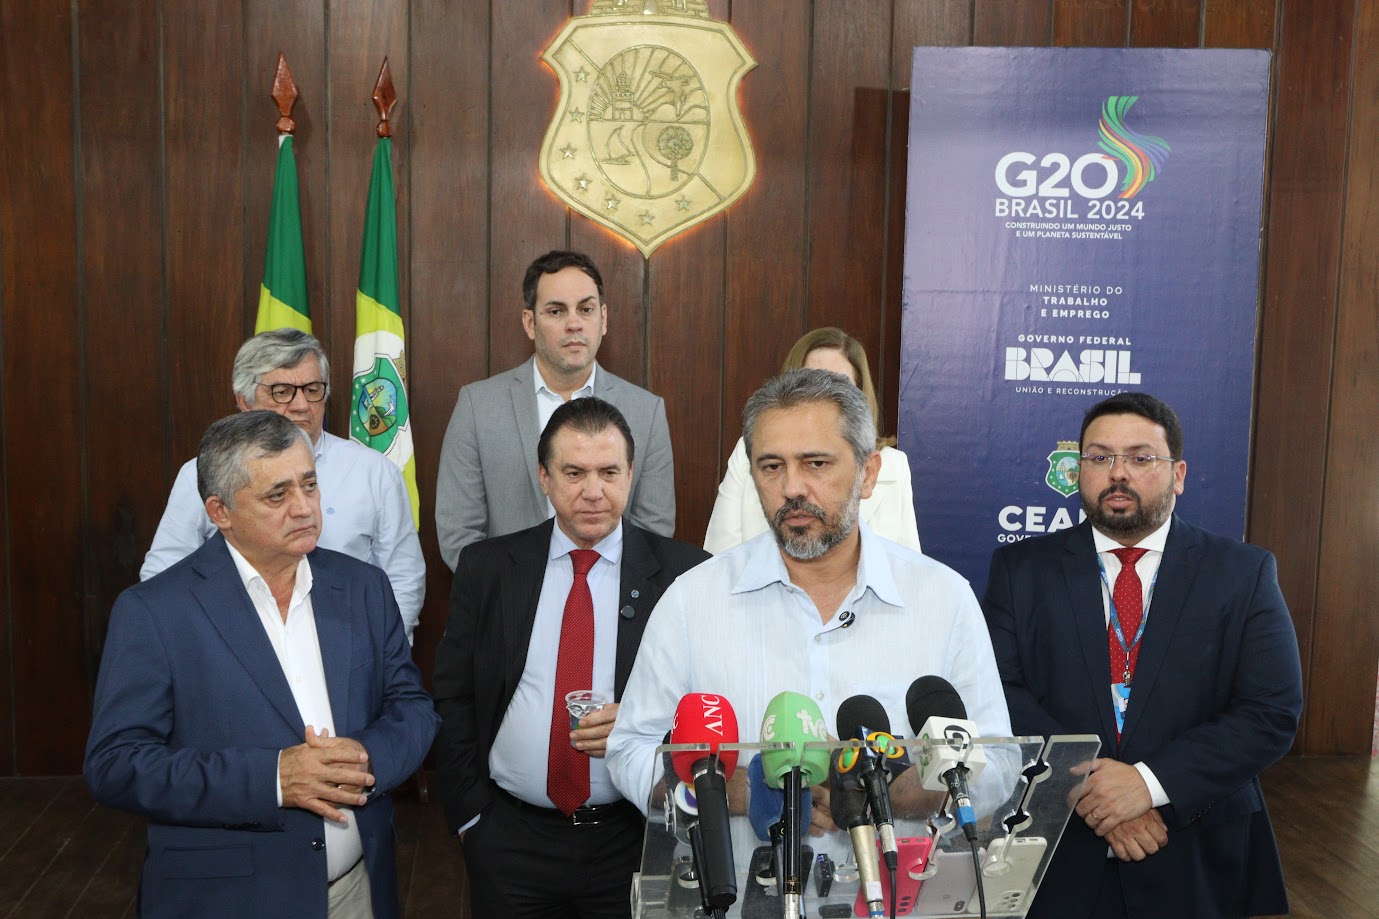 Qualidade do emprego é tema central das discussões da etapa final de GT de Emprego do G20 no Ceará